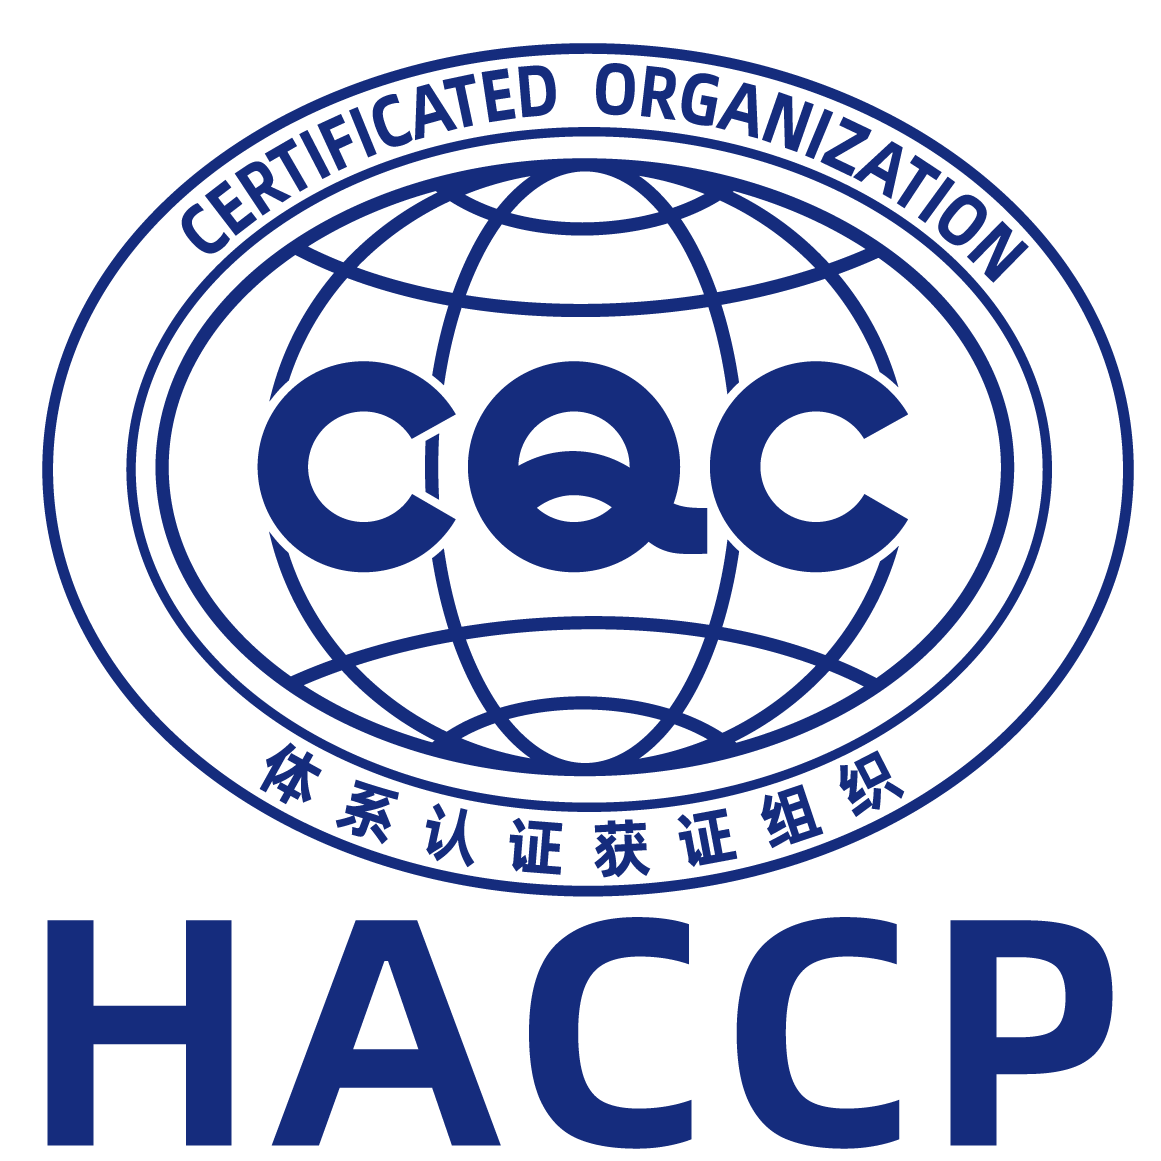 HACCP 危害分析与关键控制点认证